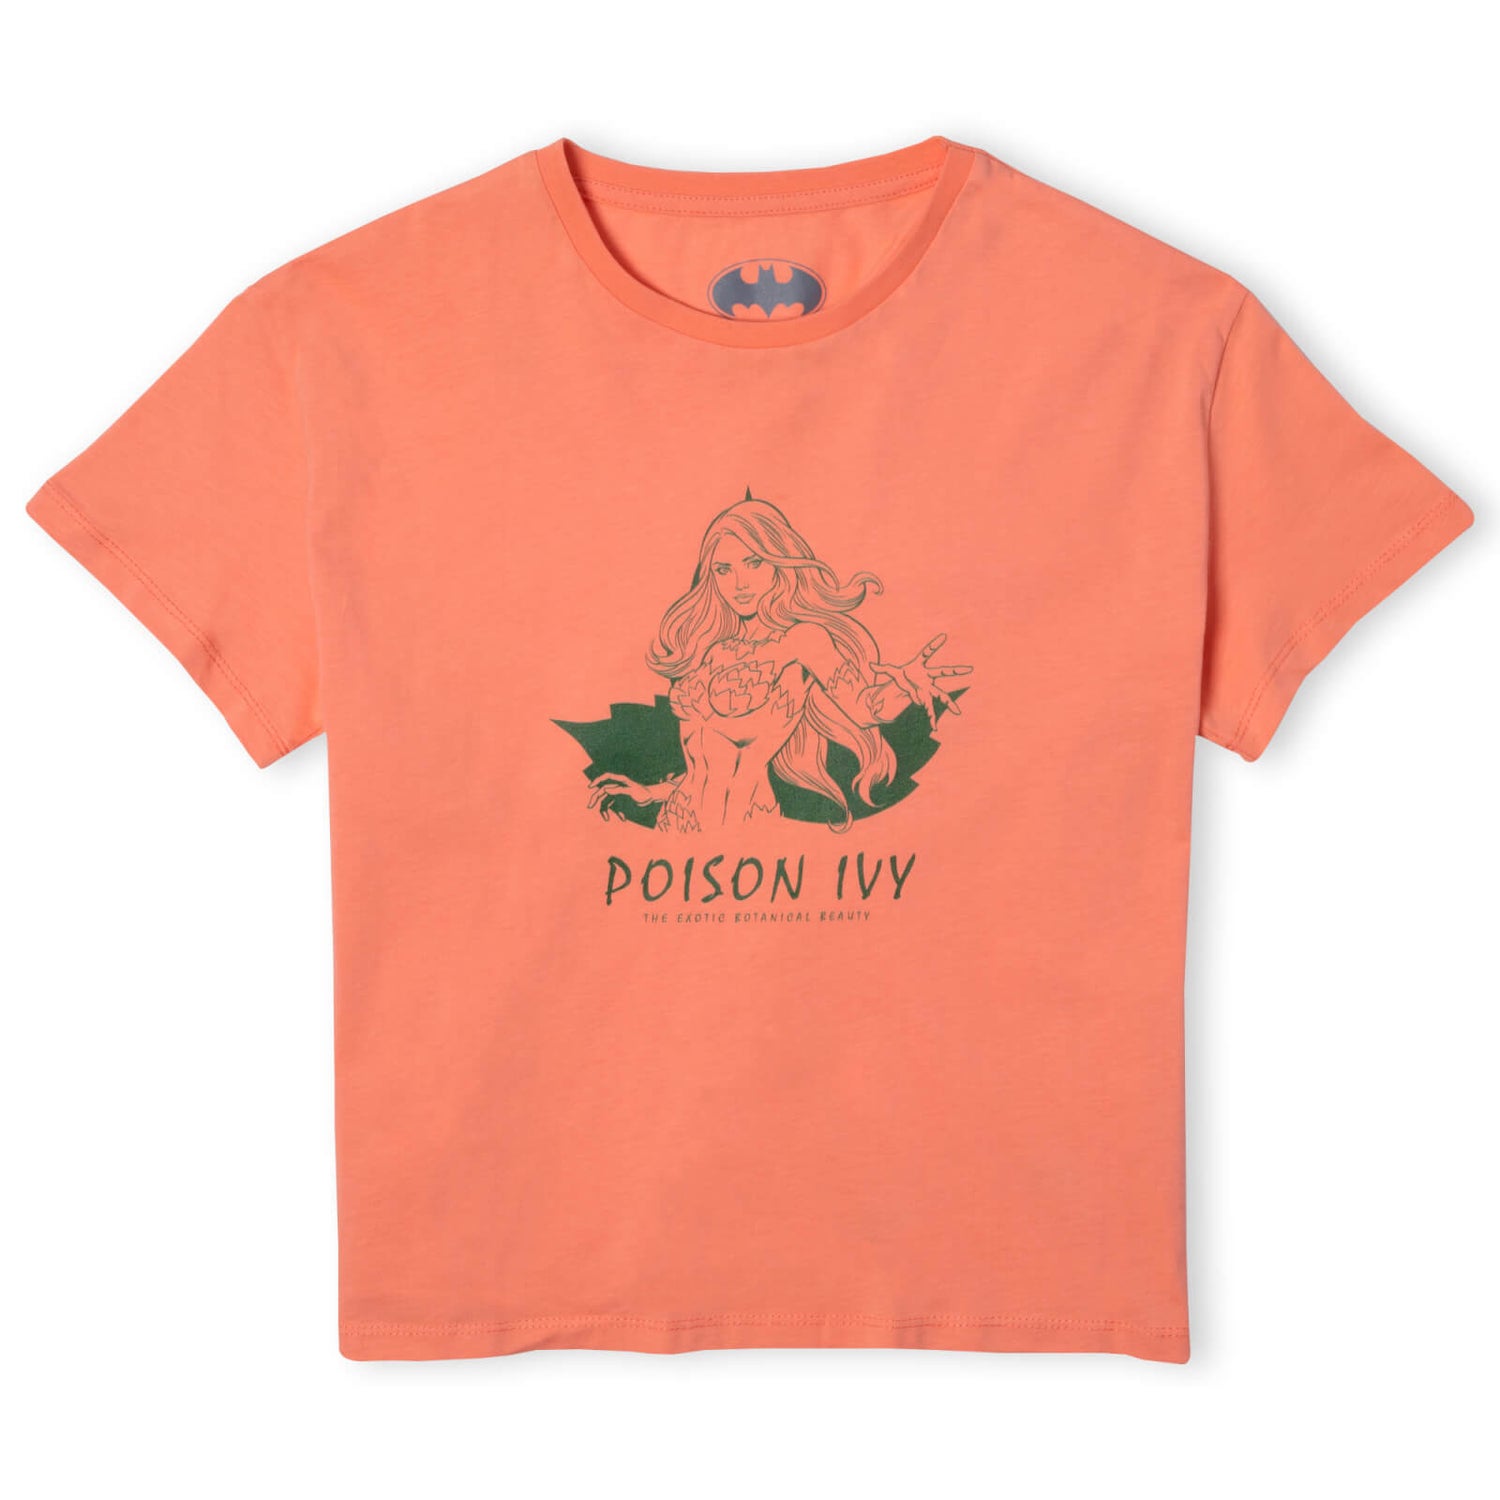 Batman Villains Poison Ivy Women's Cropped T-Shirt - Coral